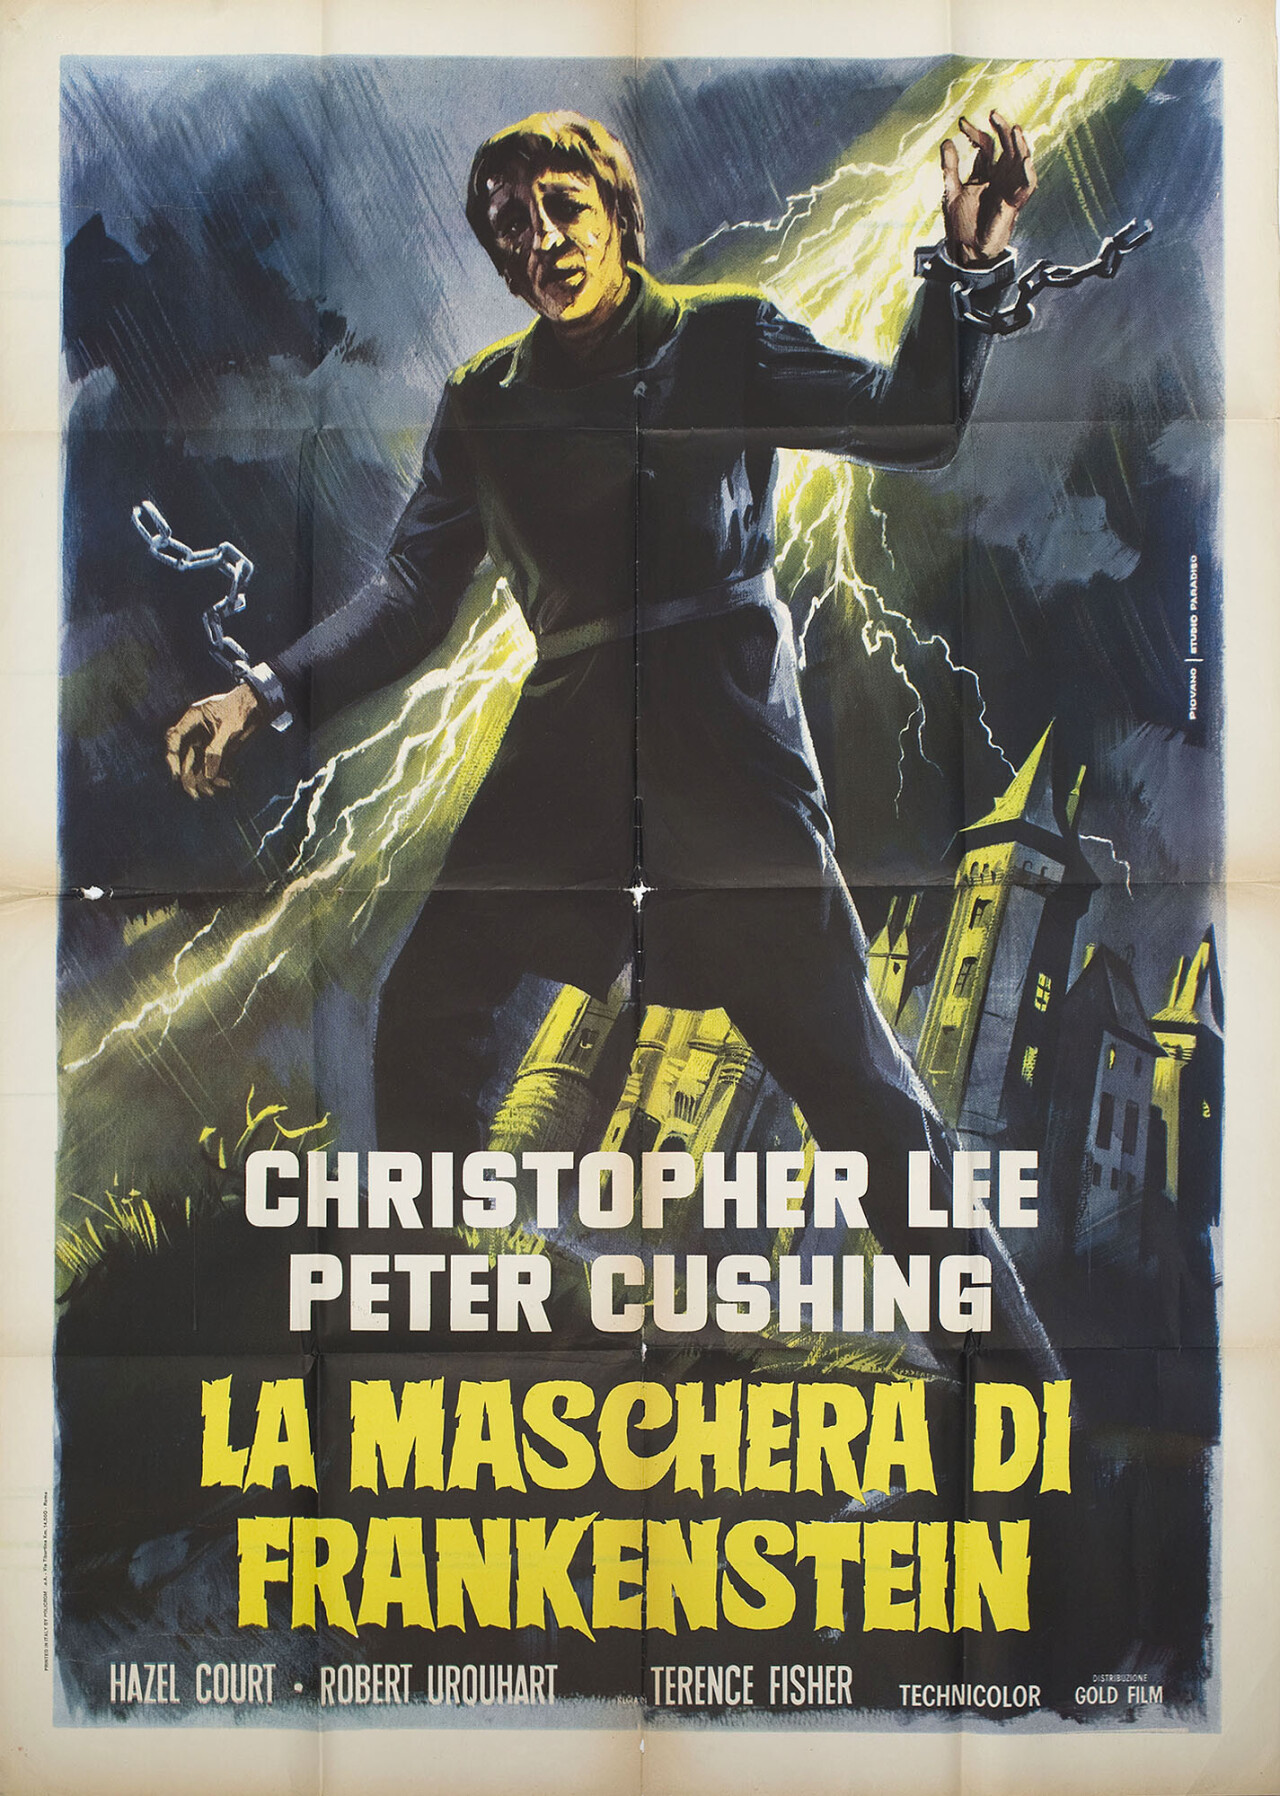 Проклятие Франкенштейна (The Curse of Frankenstein, 1957), режиссёр Теренс Фишер, итальянский постер к фильму, автор Марио Пиовано (ужасы, 1960 год)